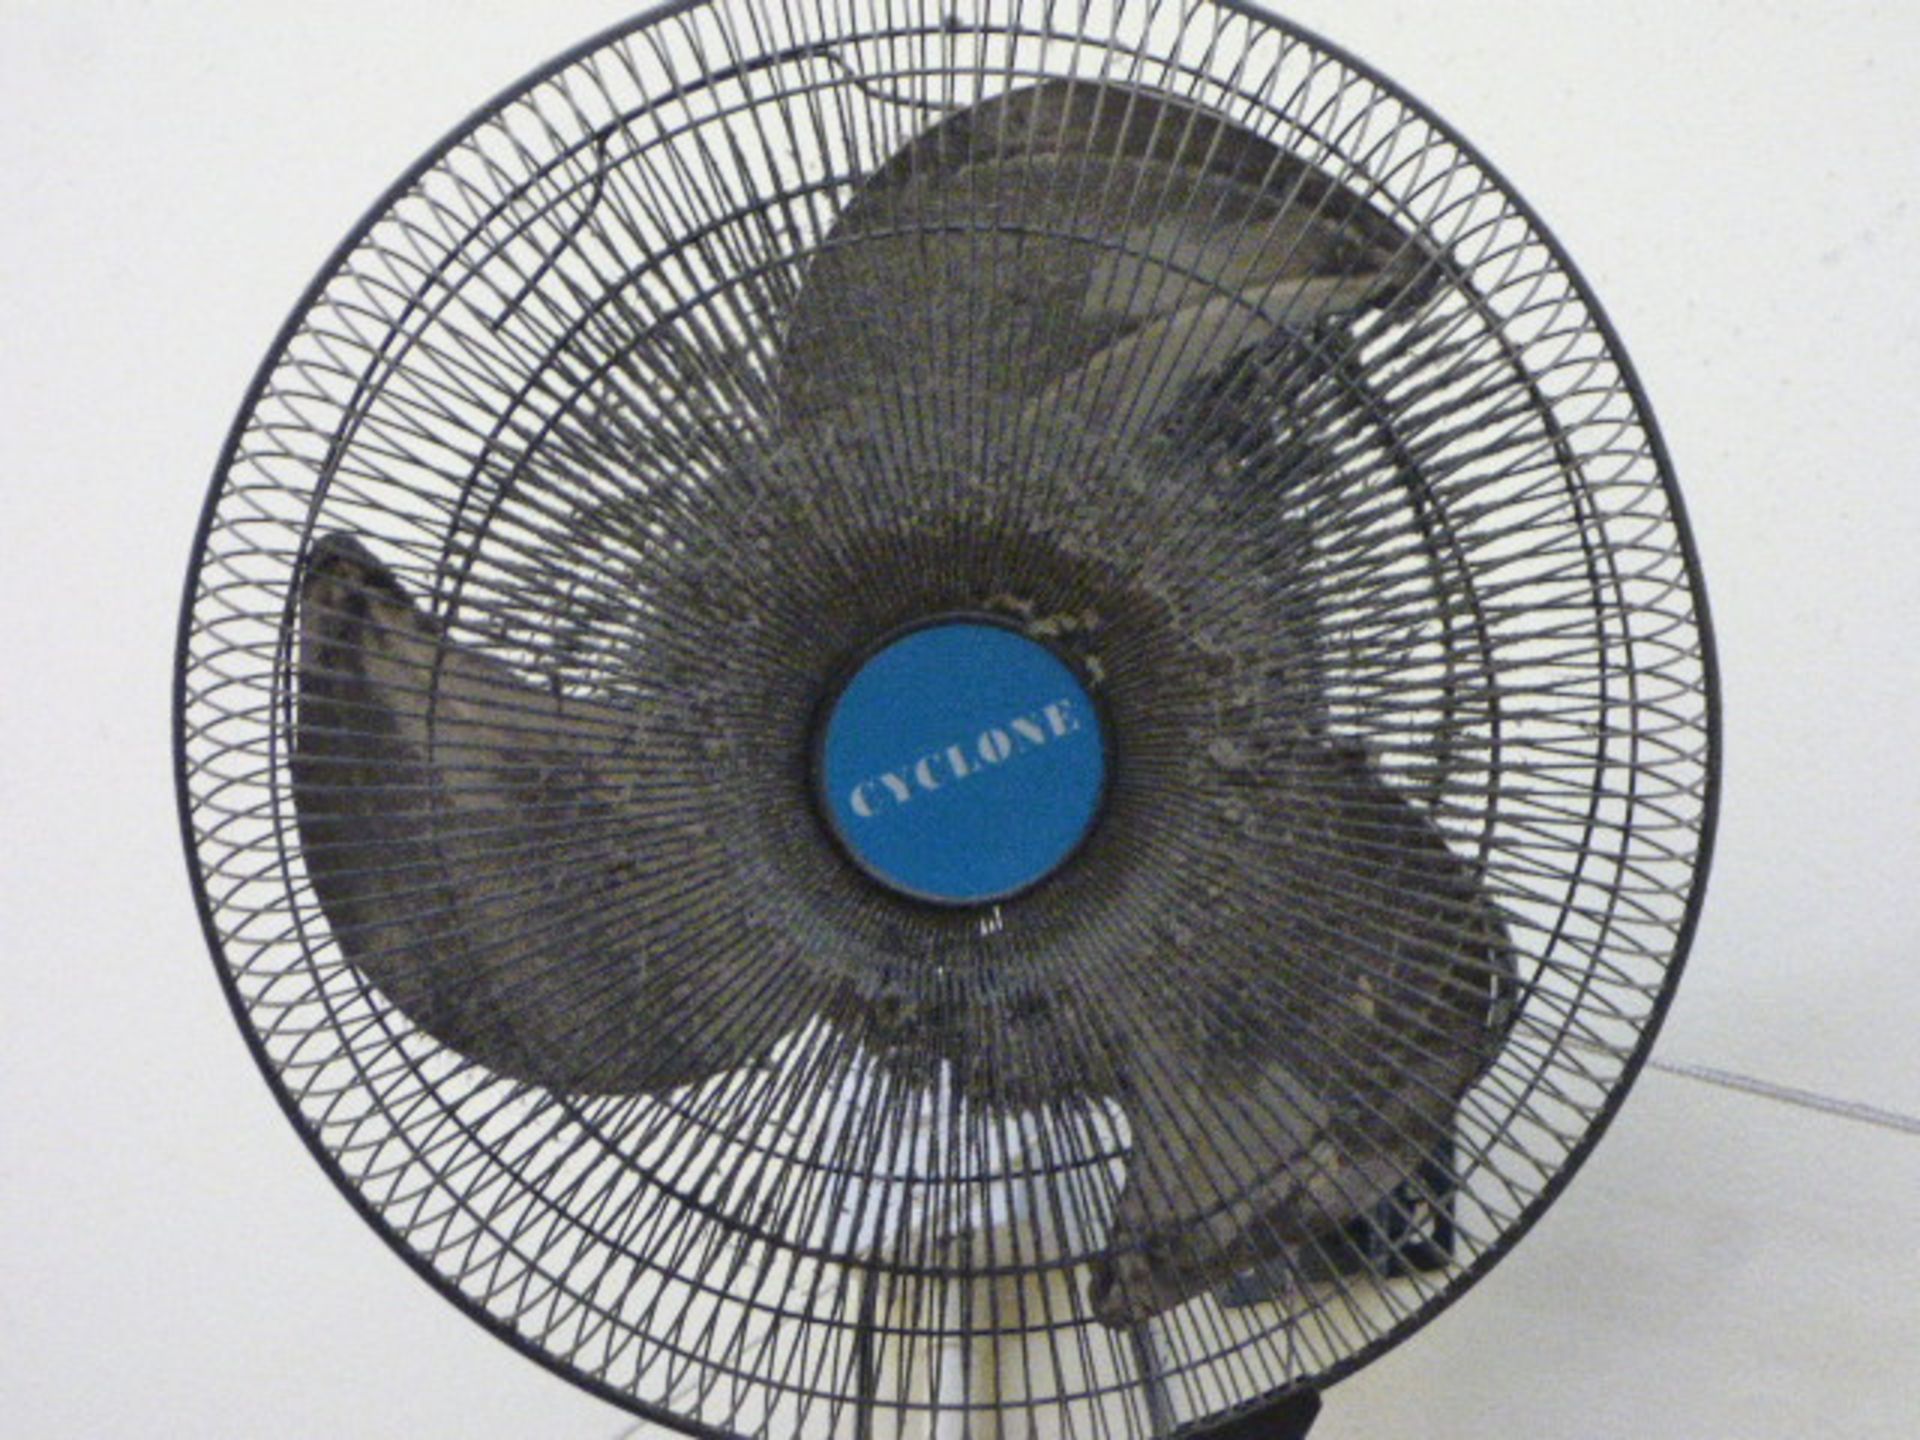 *cyclone wall mounted fan